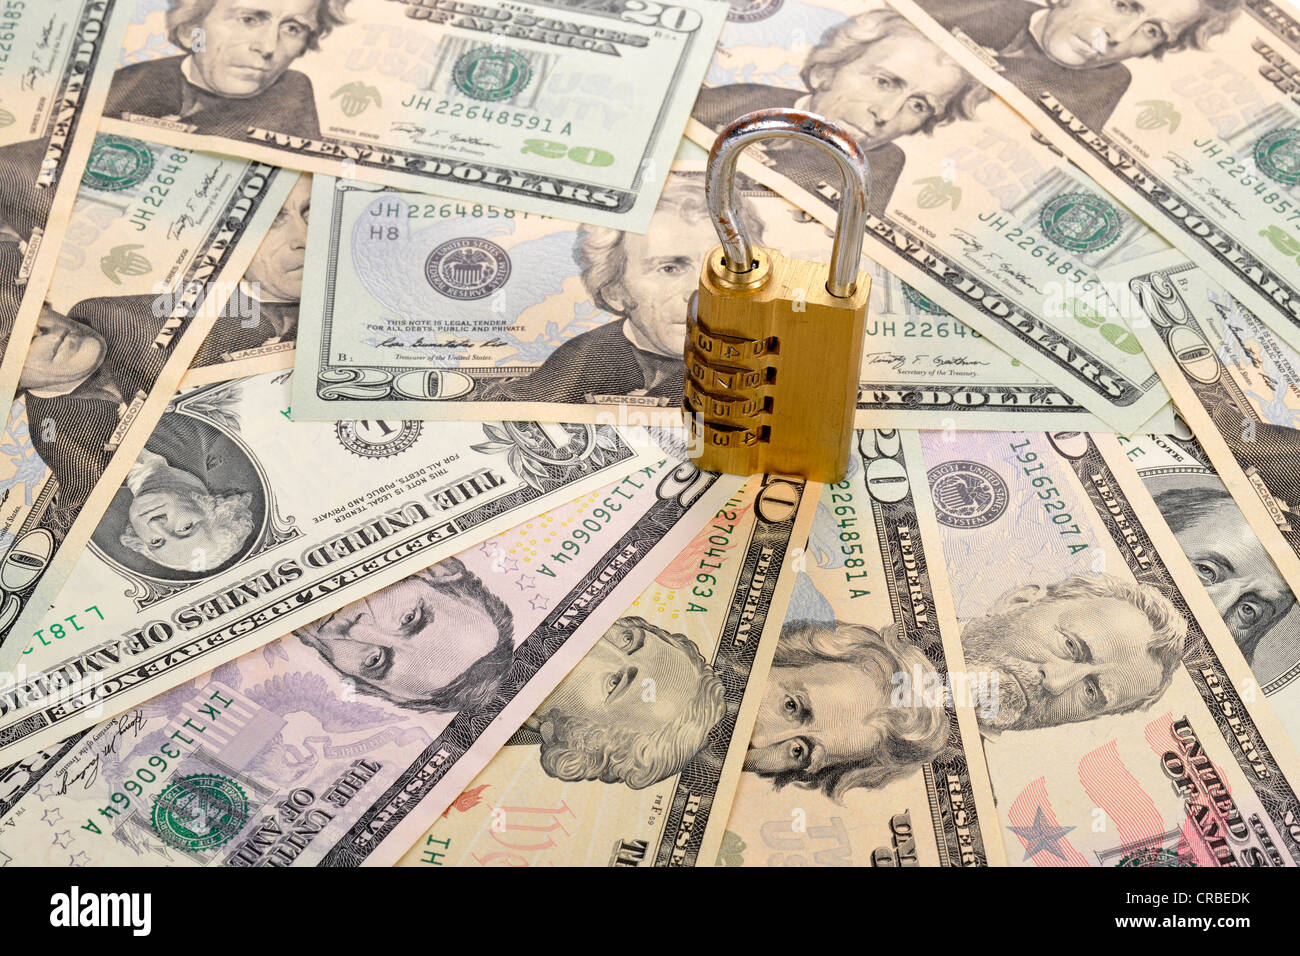 Combination lock on U.S. dollar banknotes, symbolic image of monetary security Stock Photo